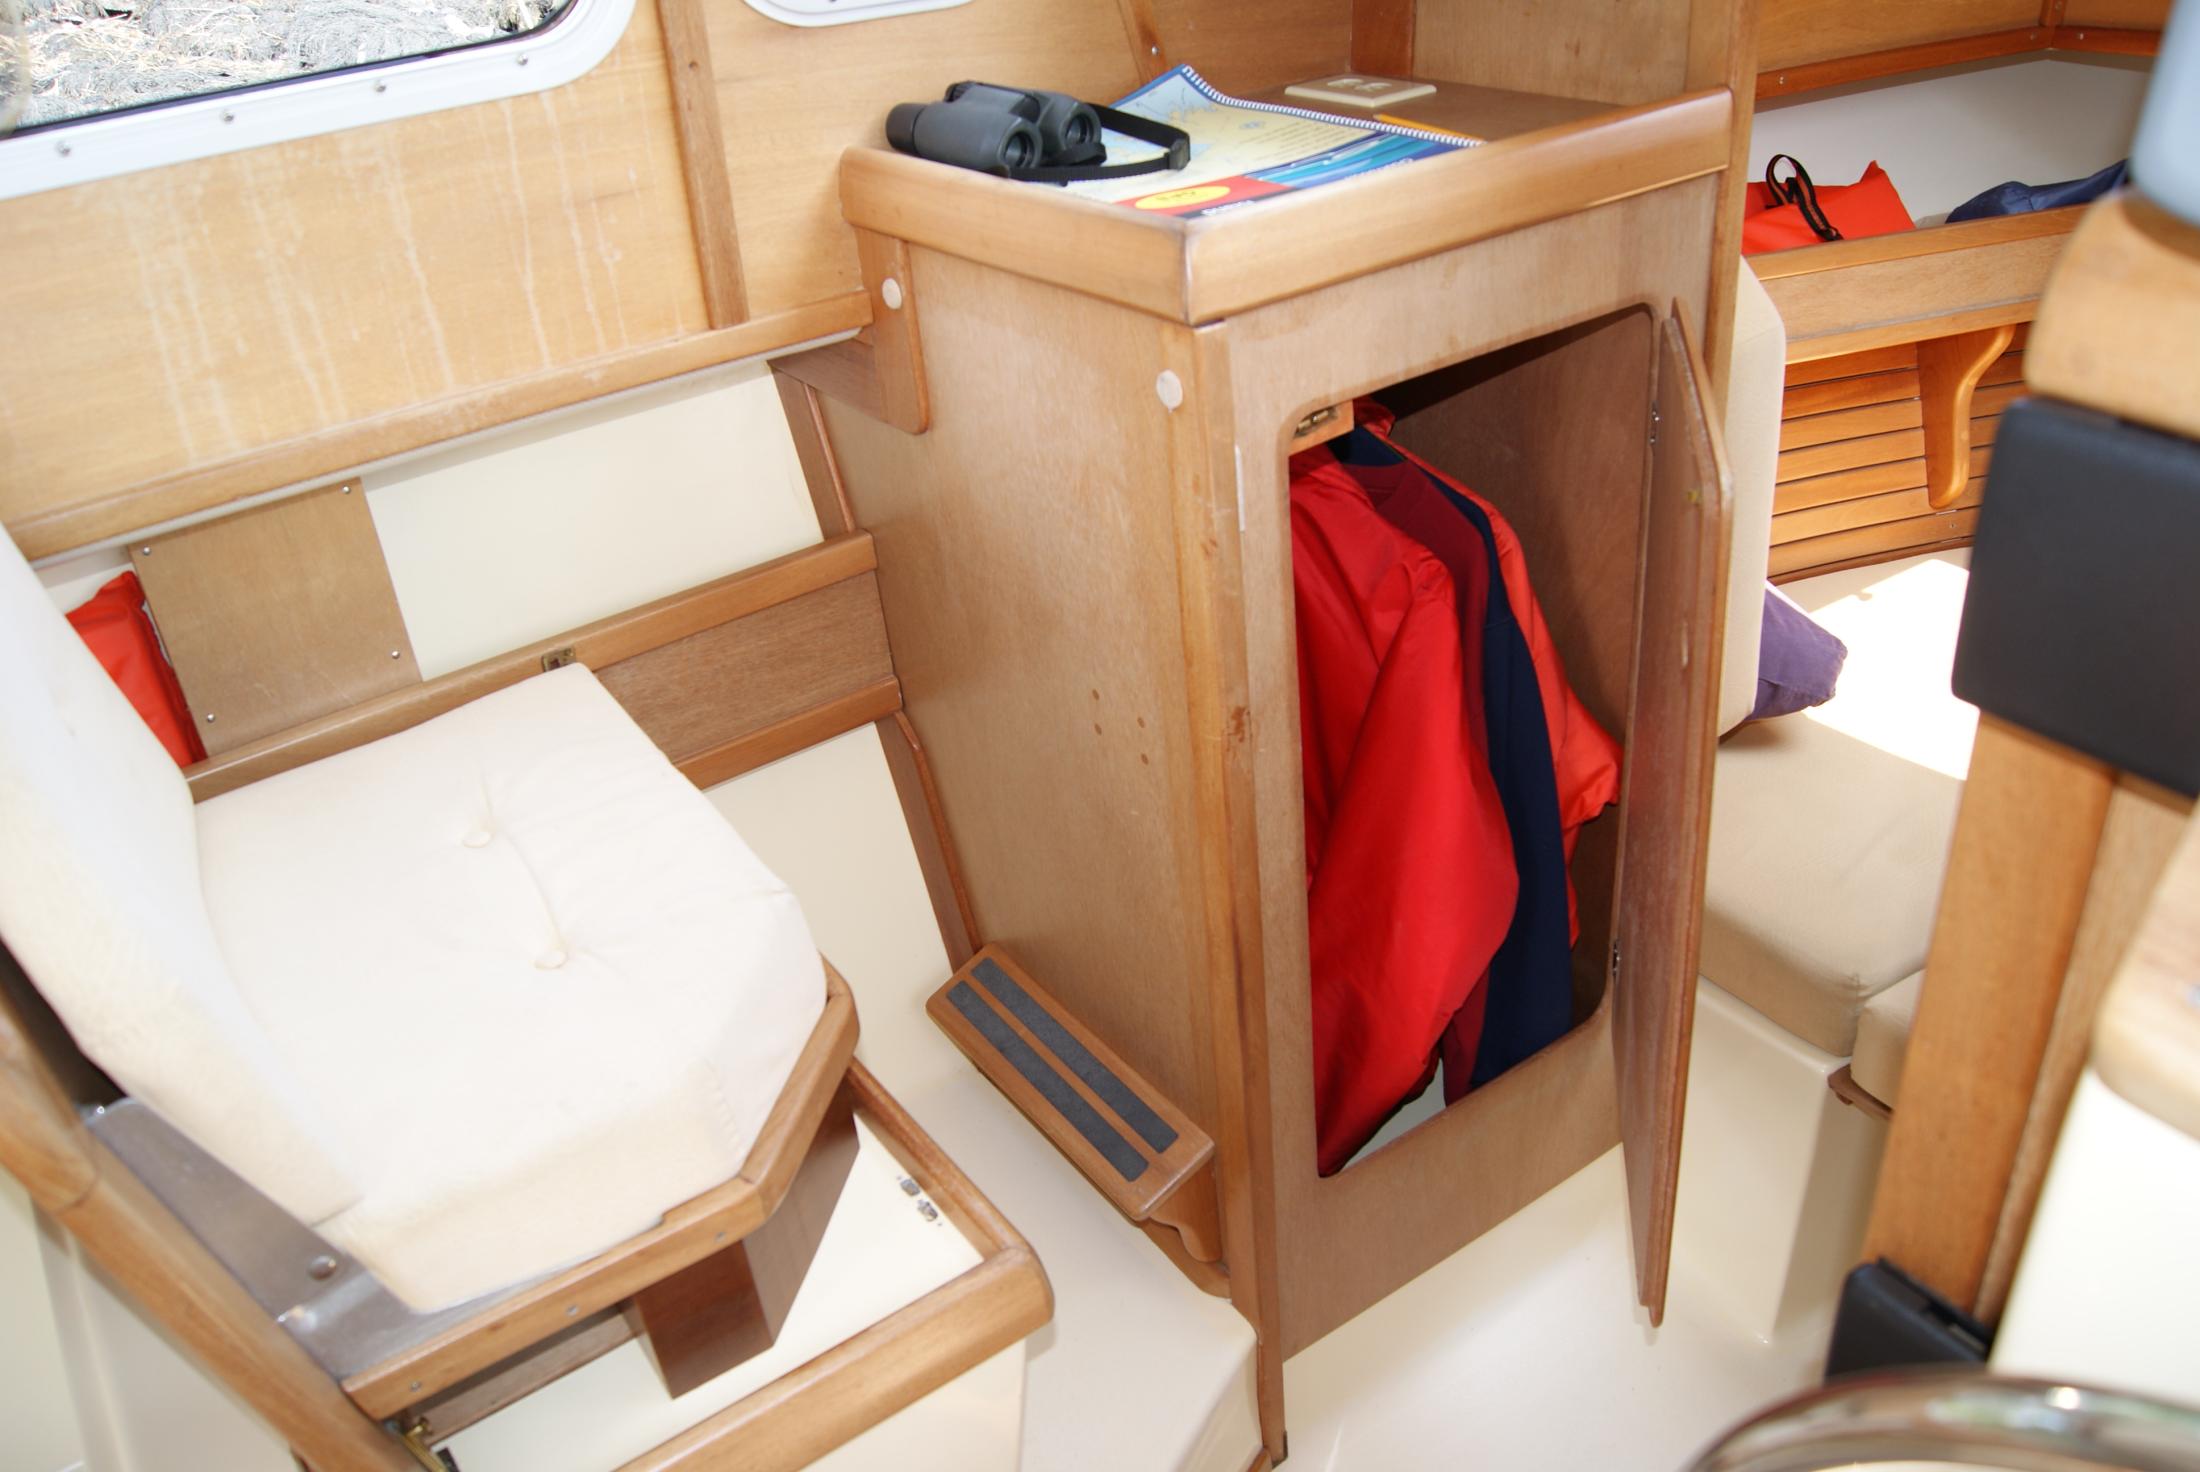 Mate seat rotates and fold flat/ Locker